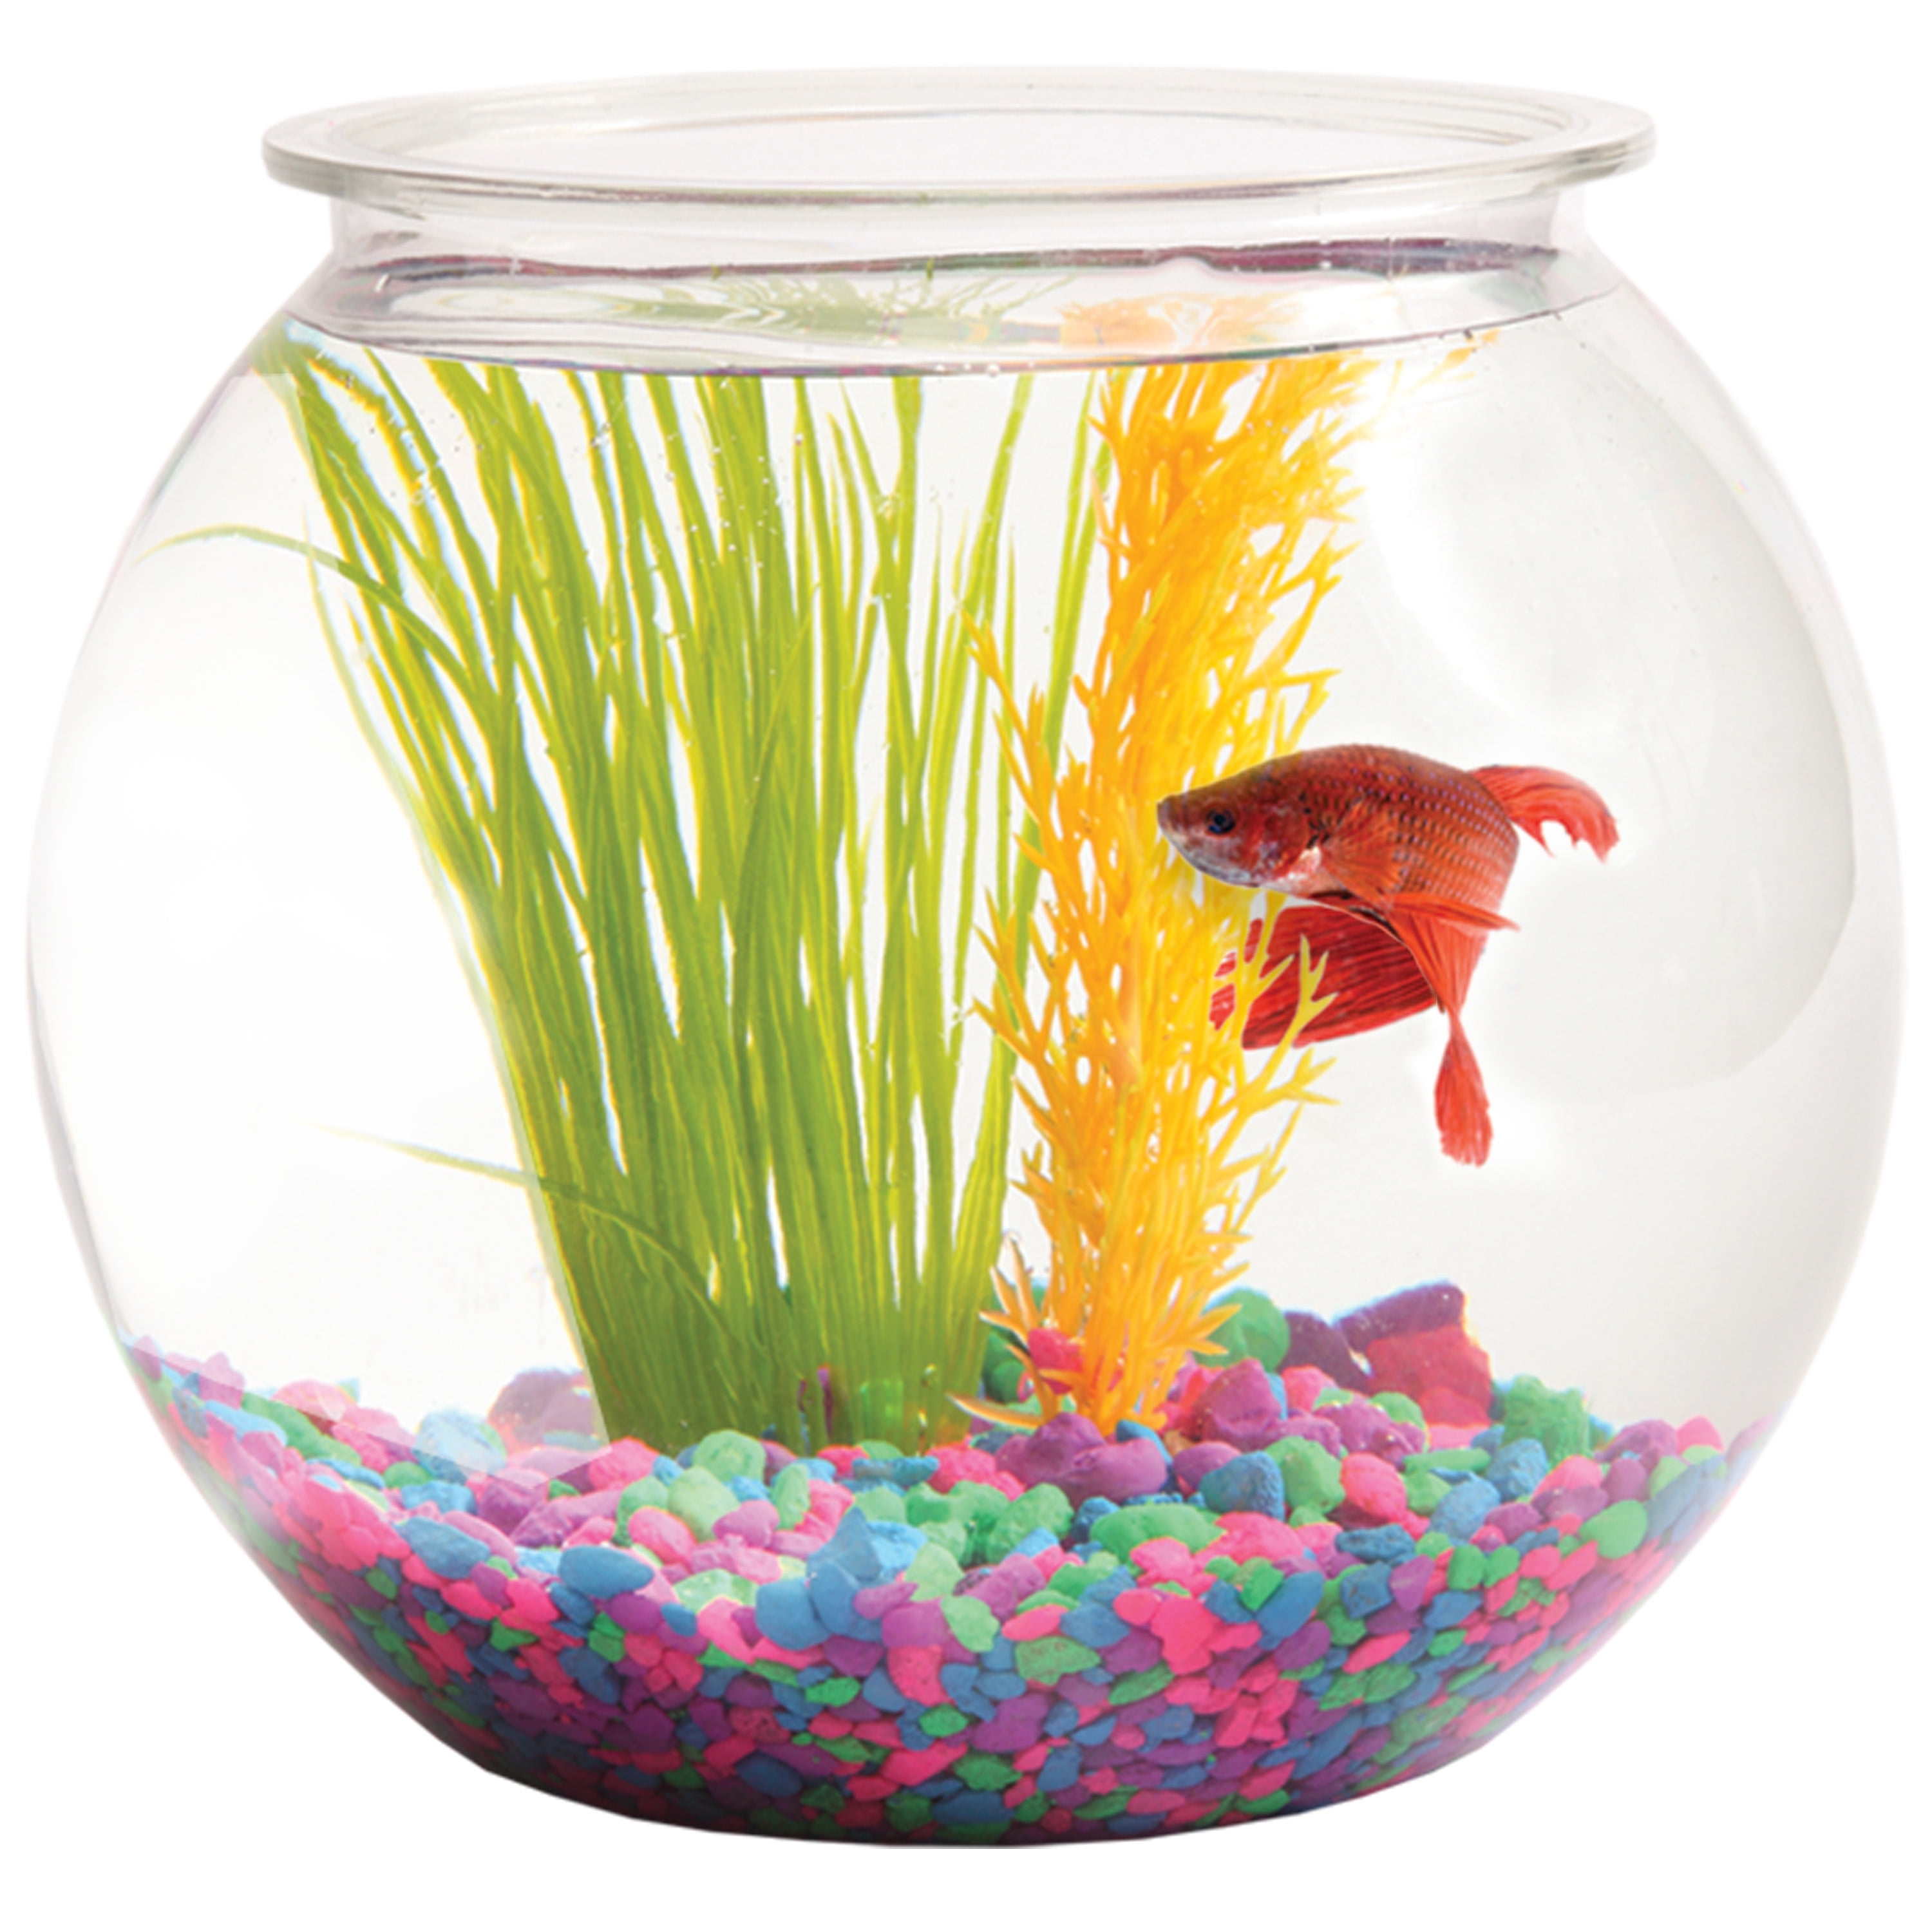 aquarium fish bowl